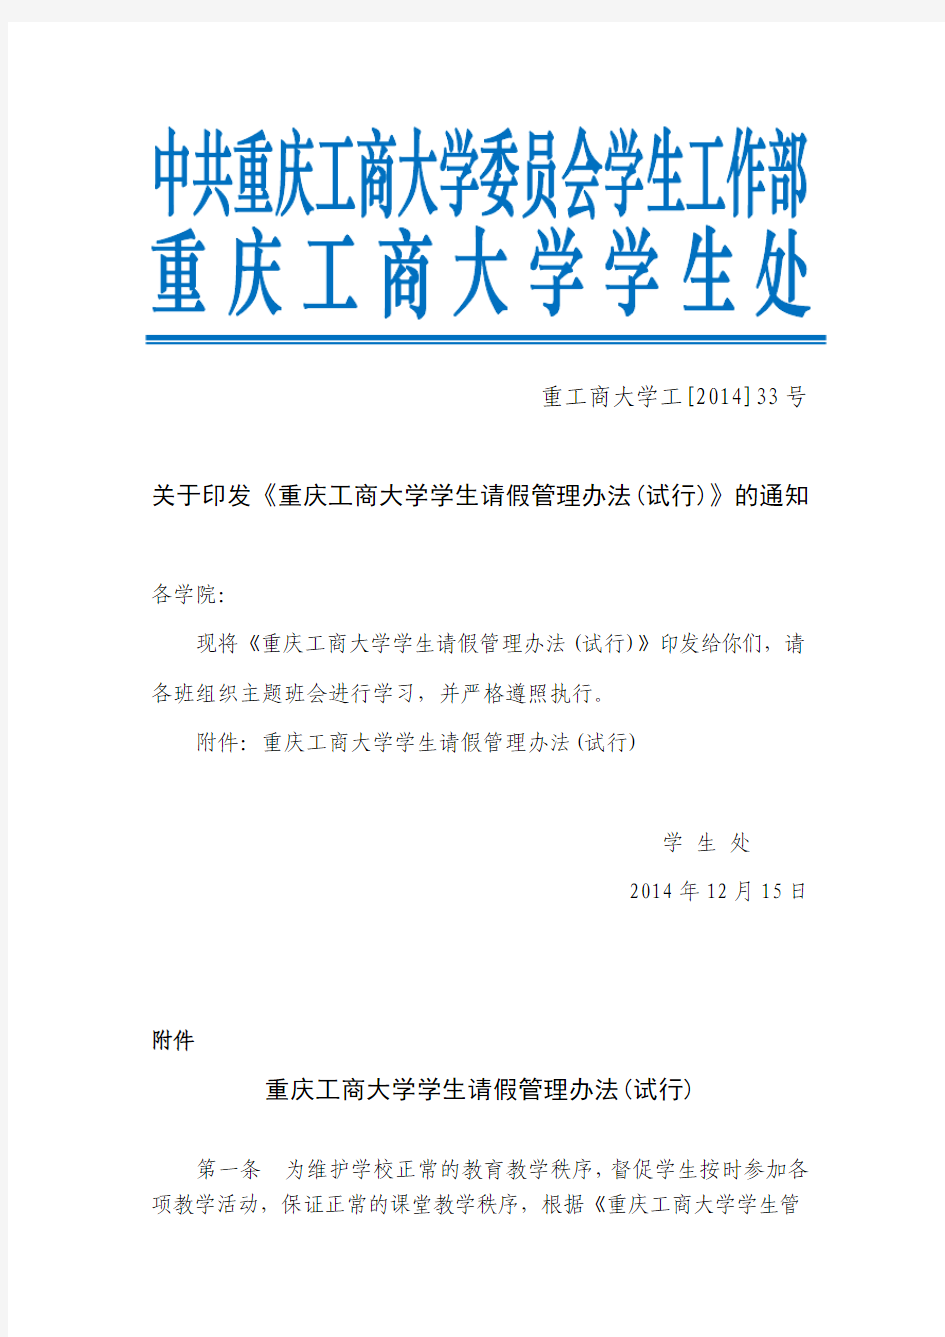 2014-33重庆工商大学学生请假管理办法12